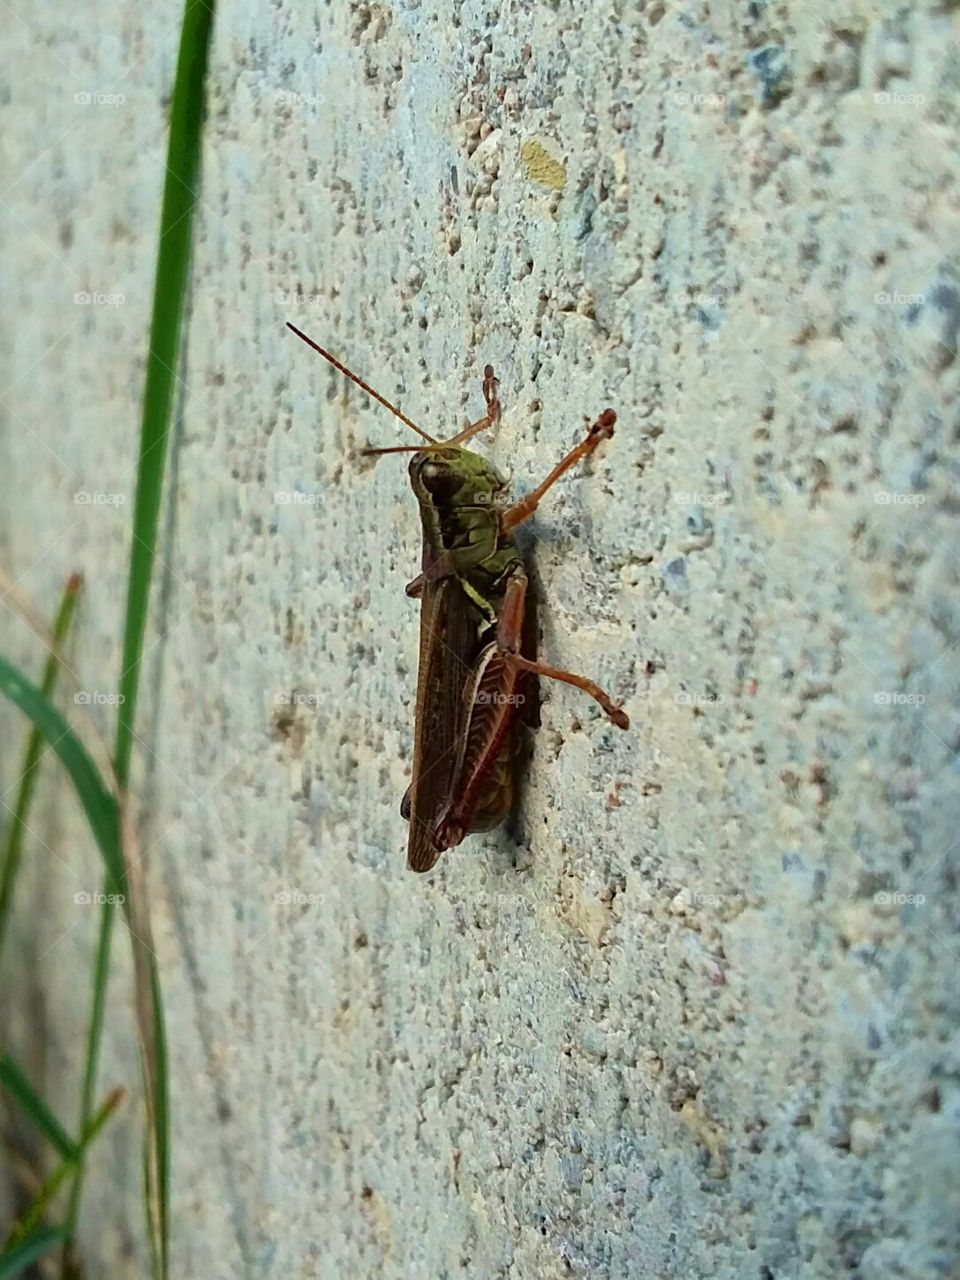 common grasshopper